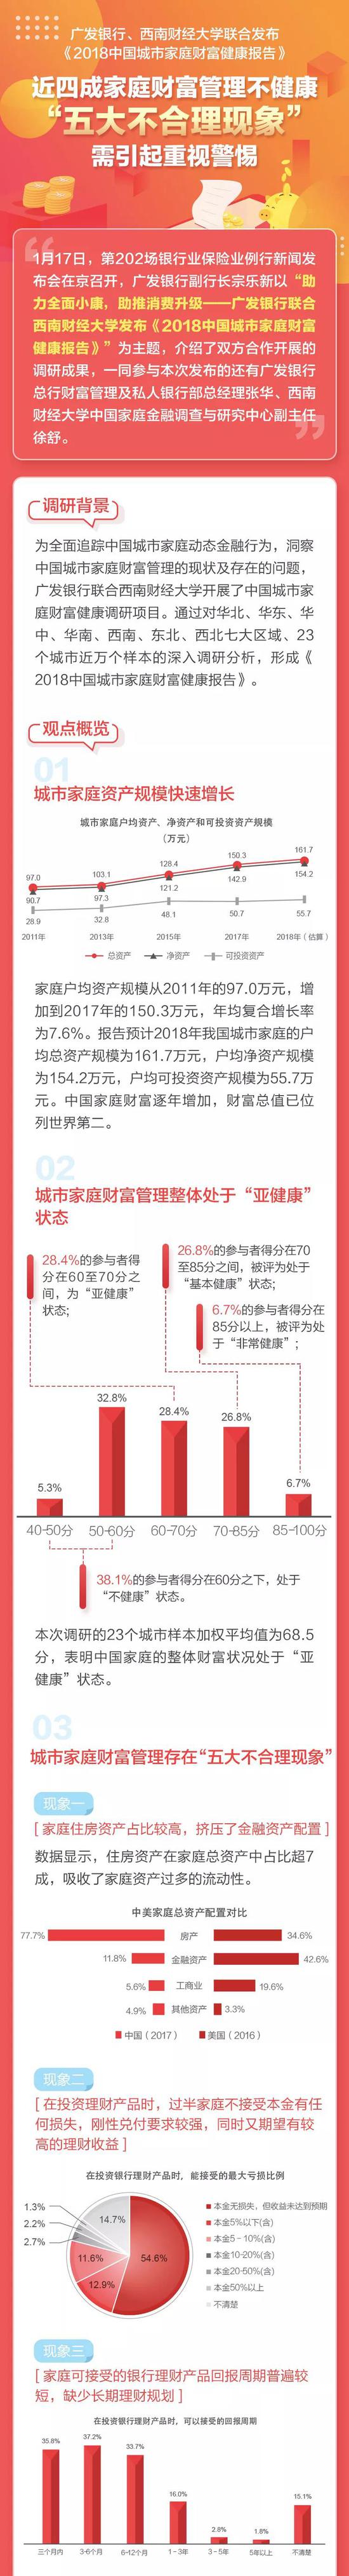 2018中国城市家庭财富健康报告